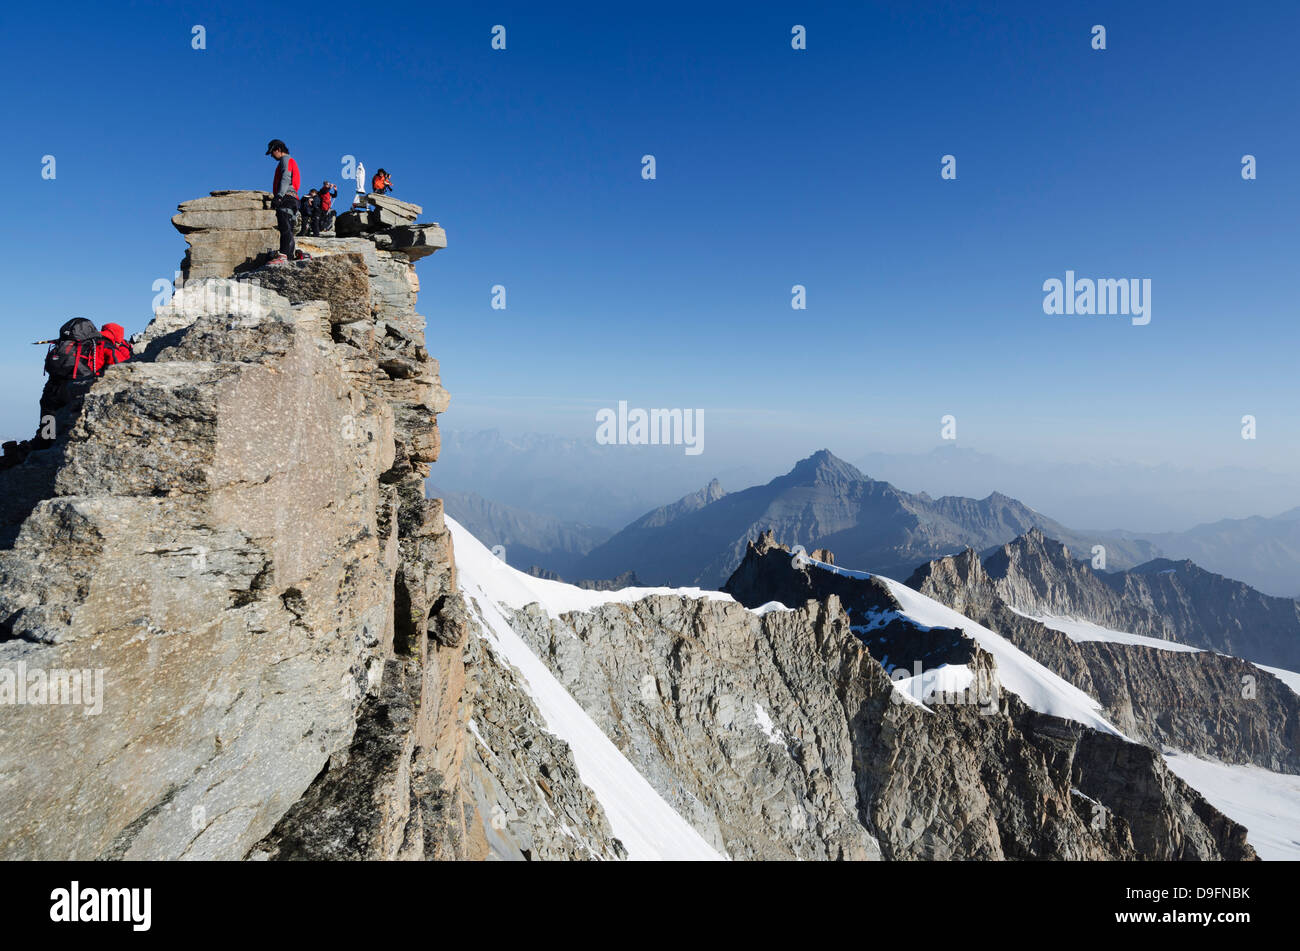 Gran Paradiso, 4061m, highest peak entirely in Italy, Gran Paradiso National Park, Aosta Valley, Italian Alps, Italy Stock Photo